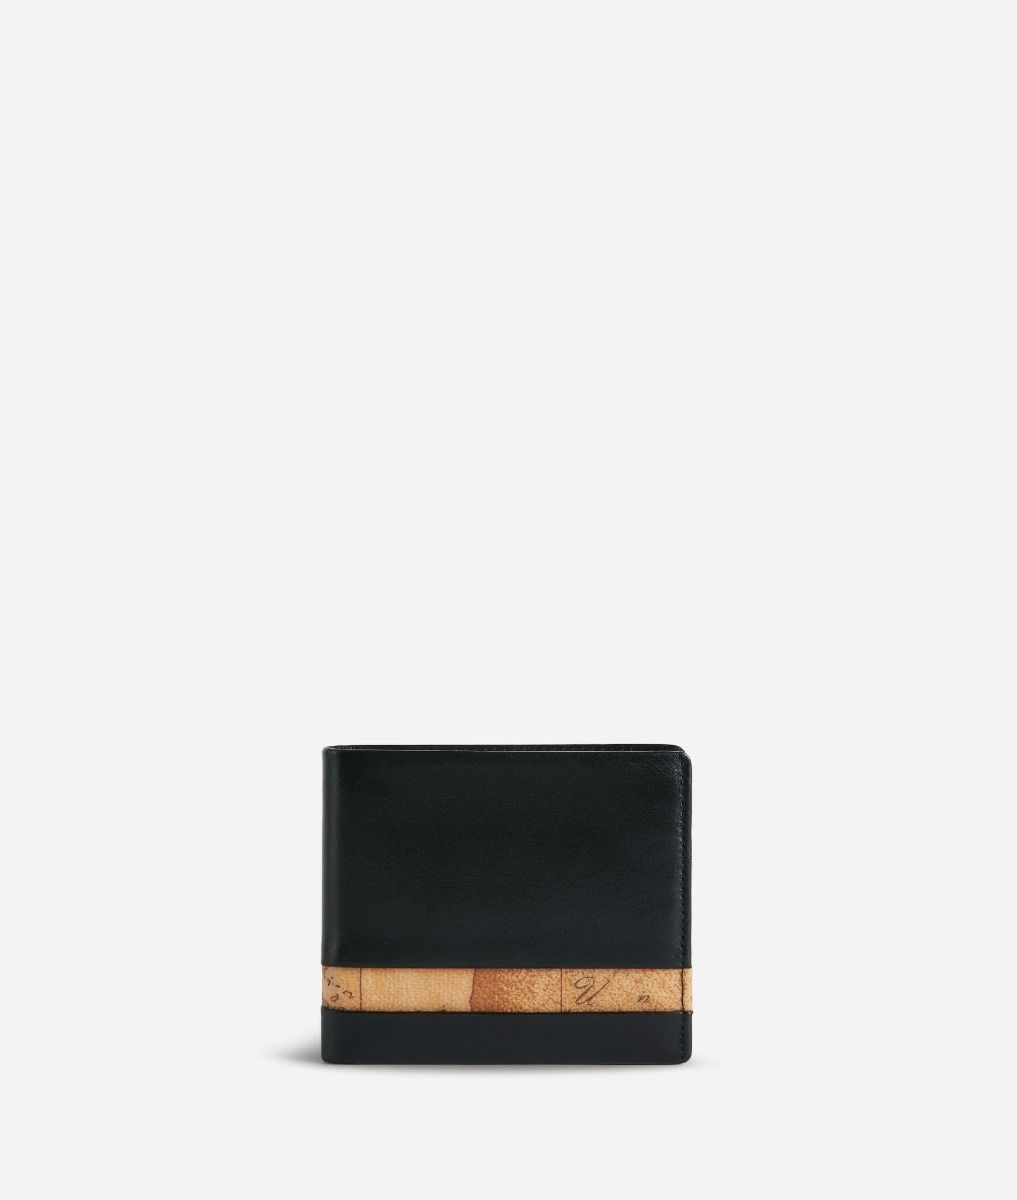 Geo Classic portafoglio medio in pelle nero,front